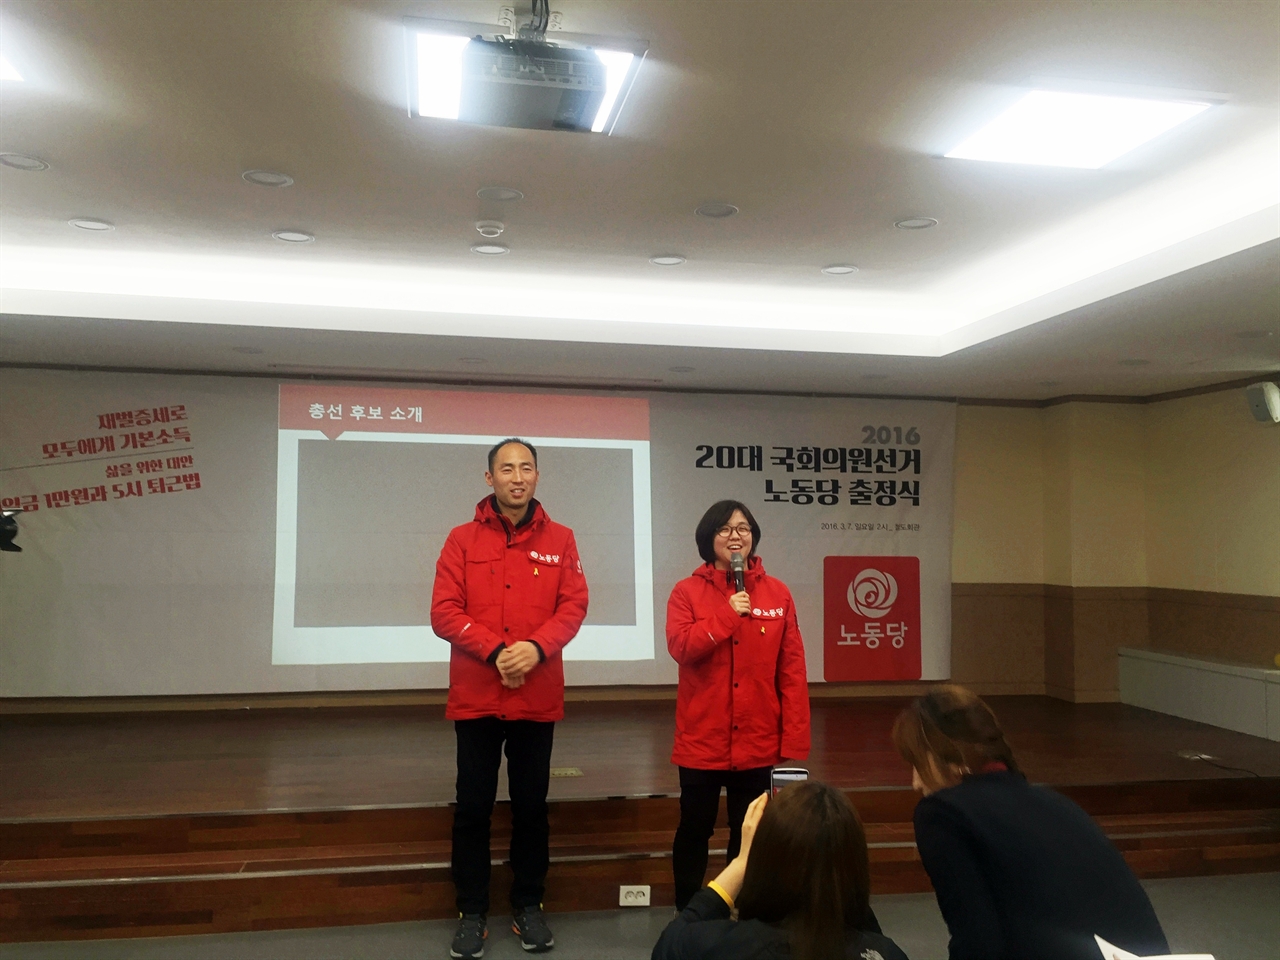 용혜인, 구교현 노동당 비례후보가 총선 출마 소감을 이야기하고 있다.